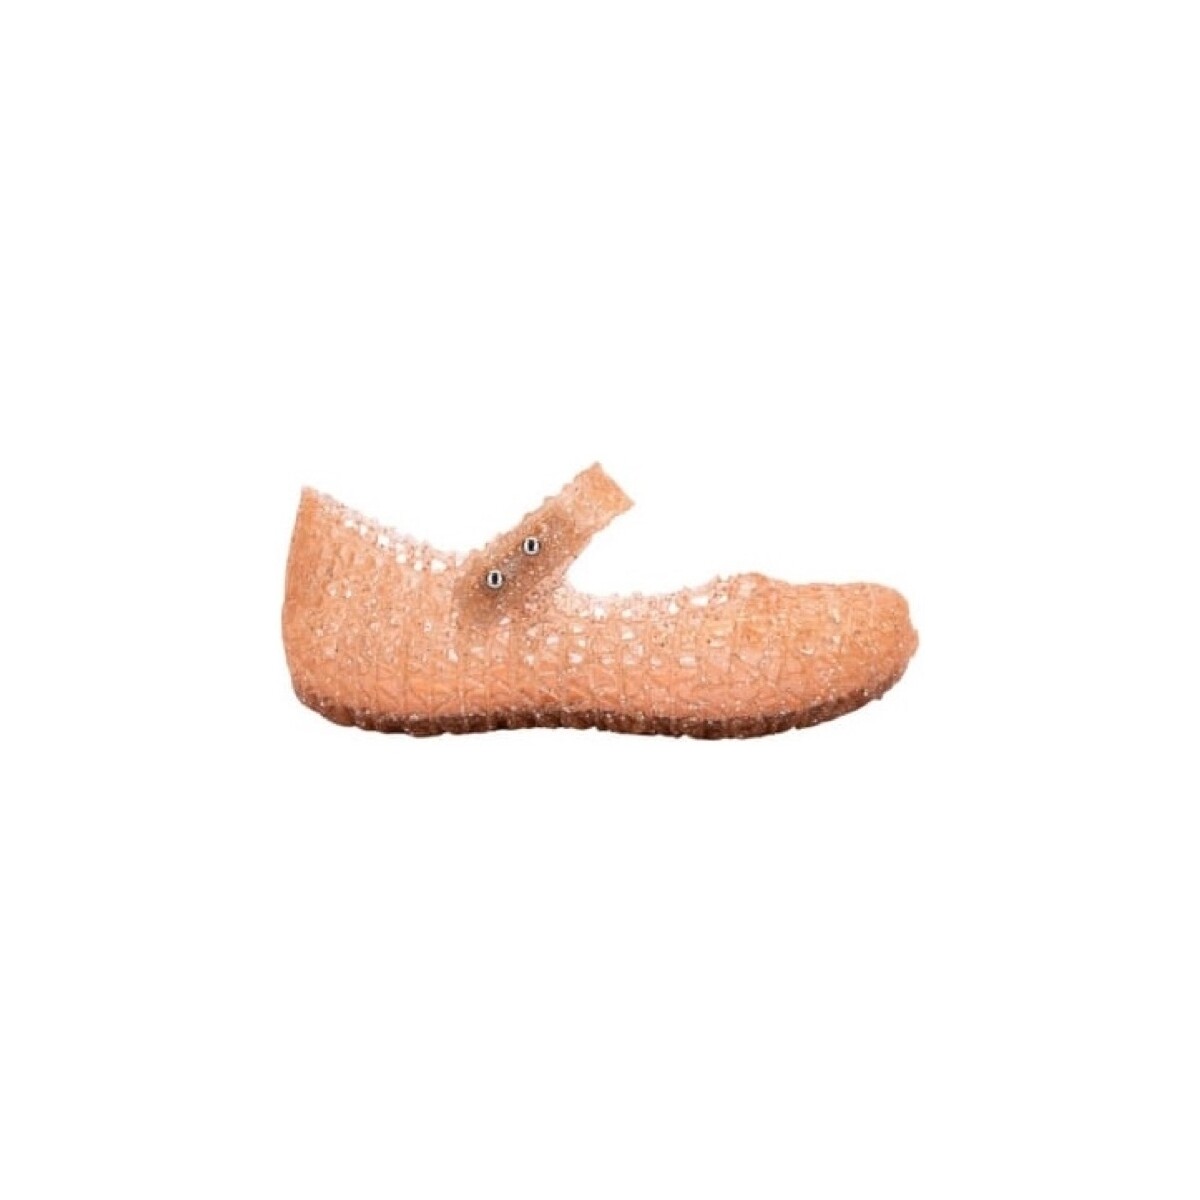 Chaussures Enfant Sandales et Nu-pieds Melissa MINI  Campana Papel B - Glitter Orange Orange